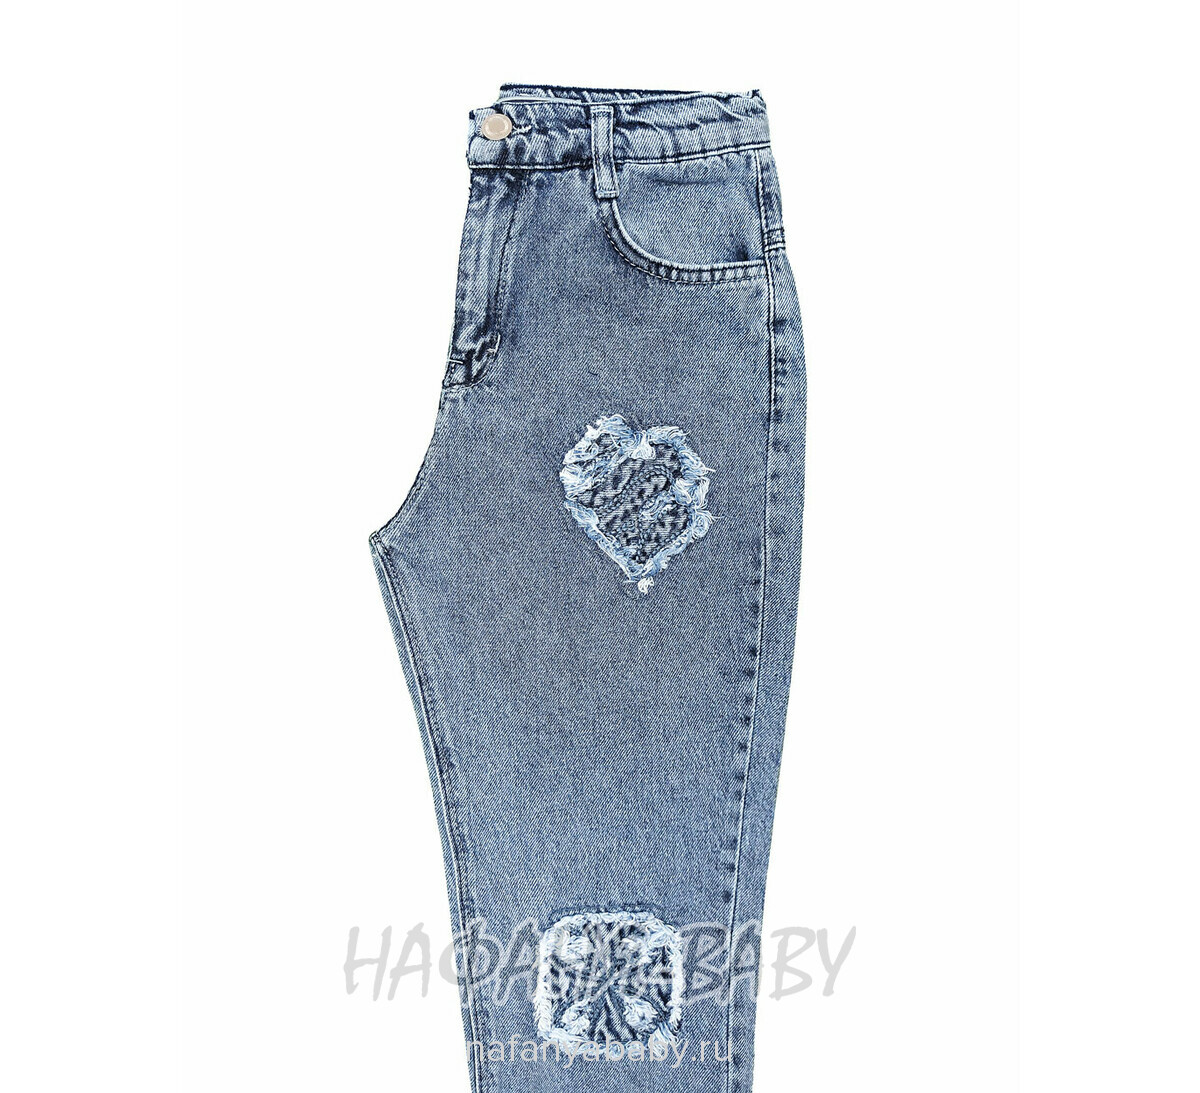 Джинсы ELEYSA Jeans арт: 66372 для девочки 13-16 лет, цвет синий, оптом Турция